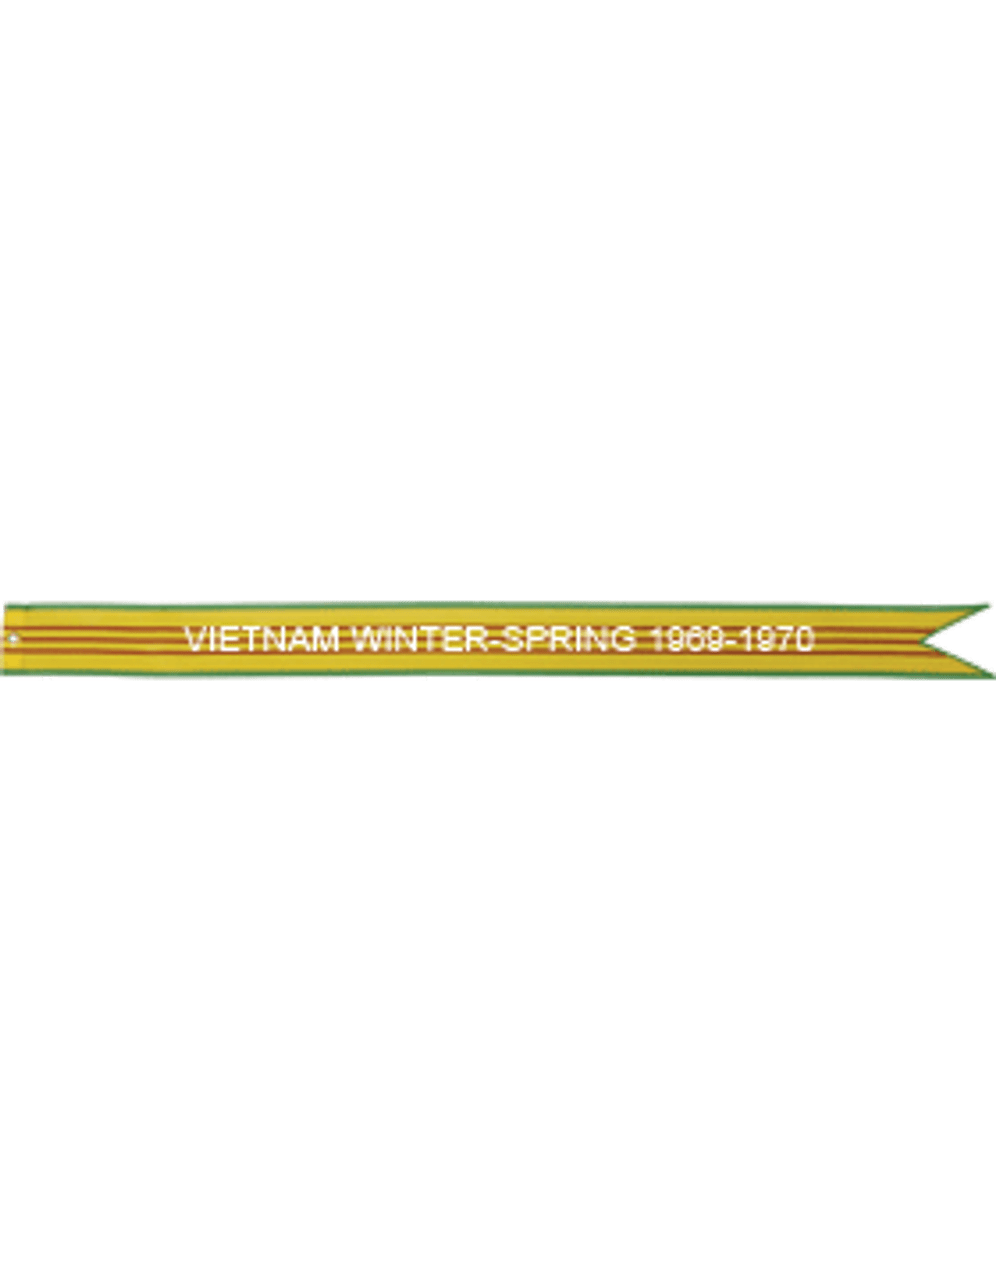 US Air Force Battle Streamer Vietnam Service VIETNAM SUMMER-FALL 1969